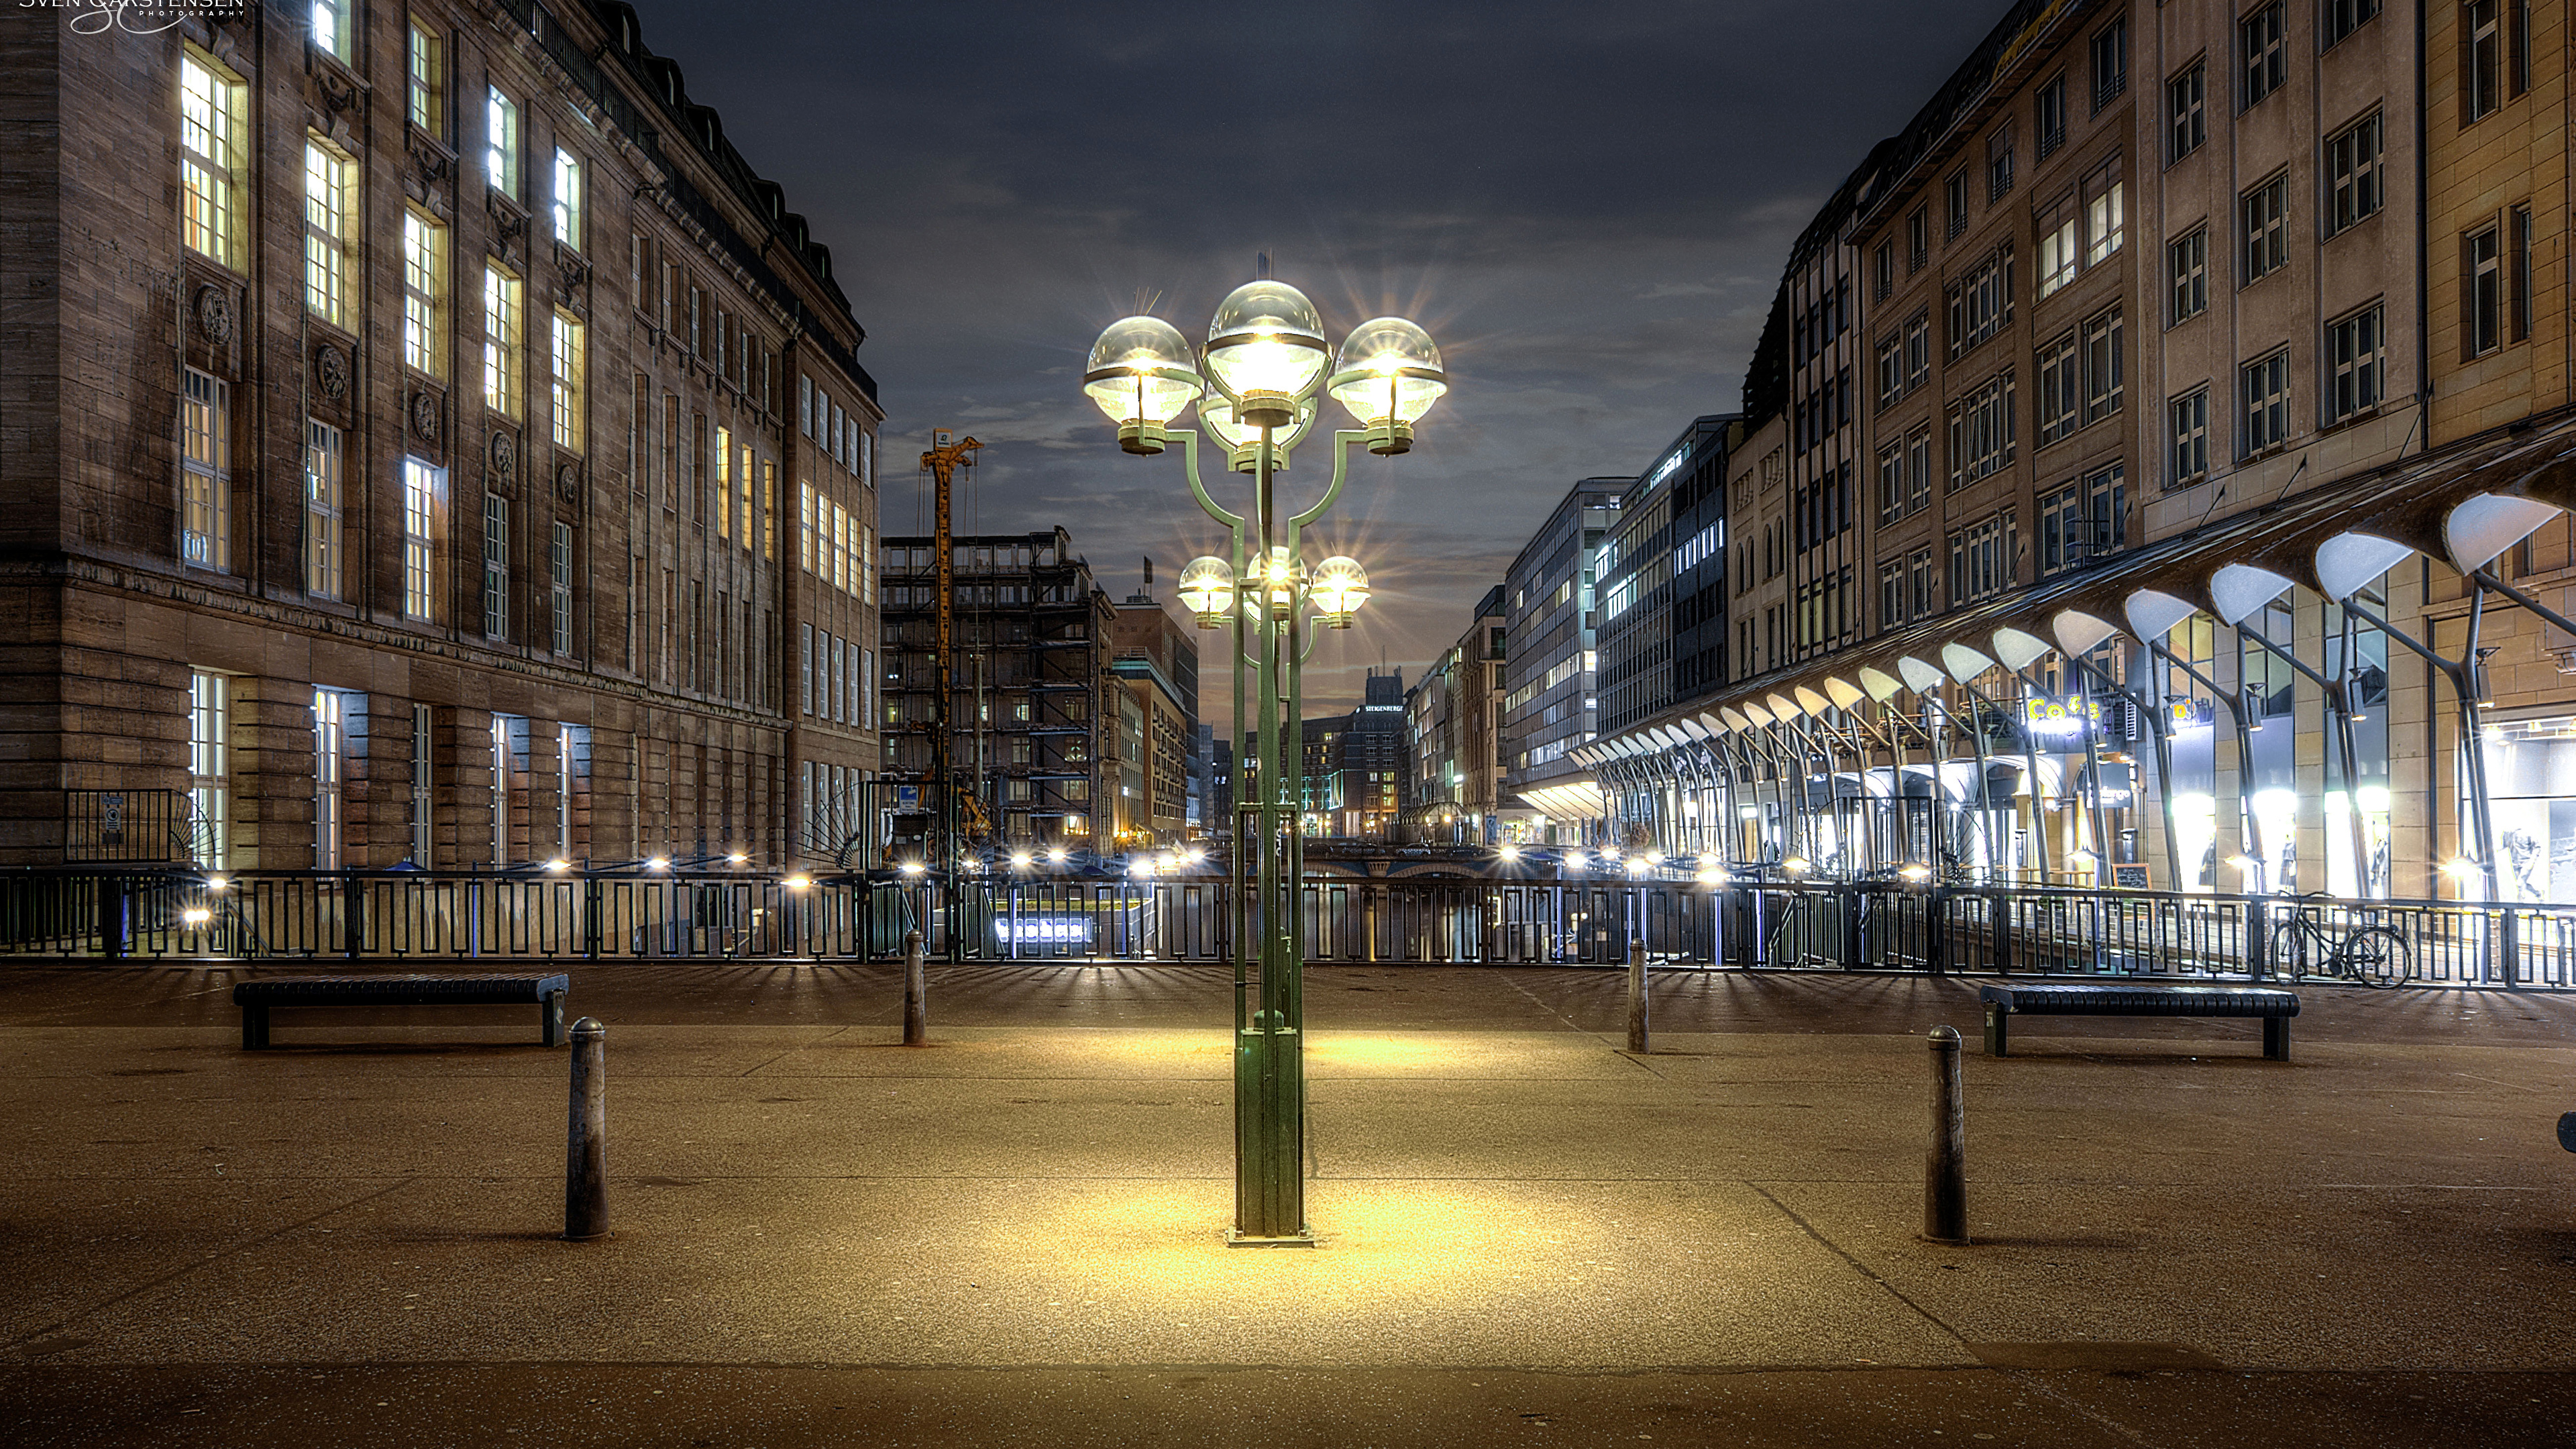 Lampadaires Éclairés au Milieu de la Ville Pendant la Nuit. Wallpaper in 3840x2160 Resolution